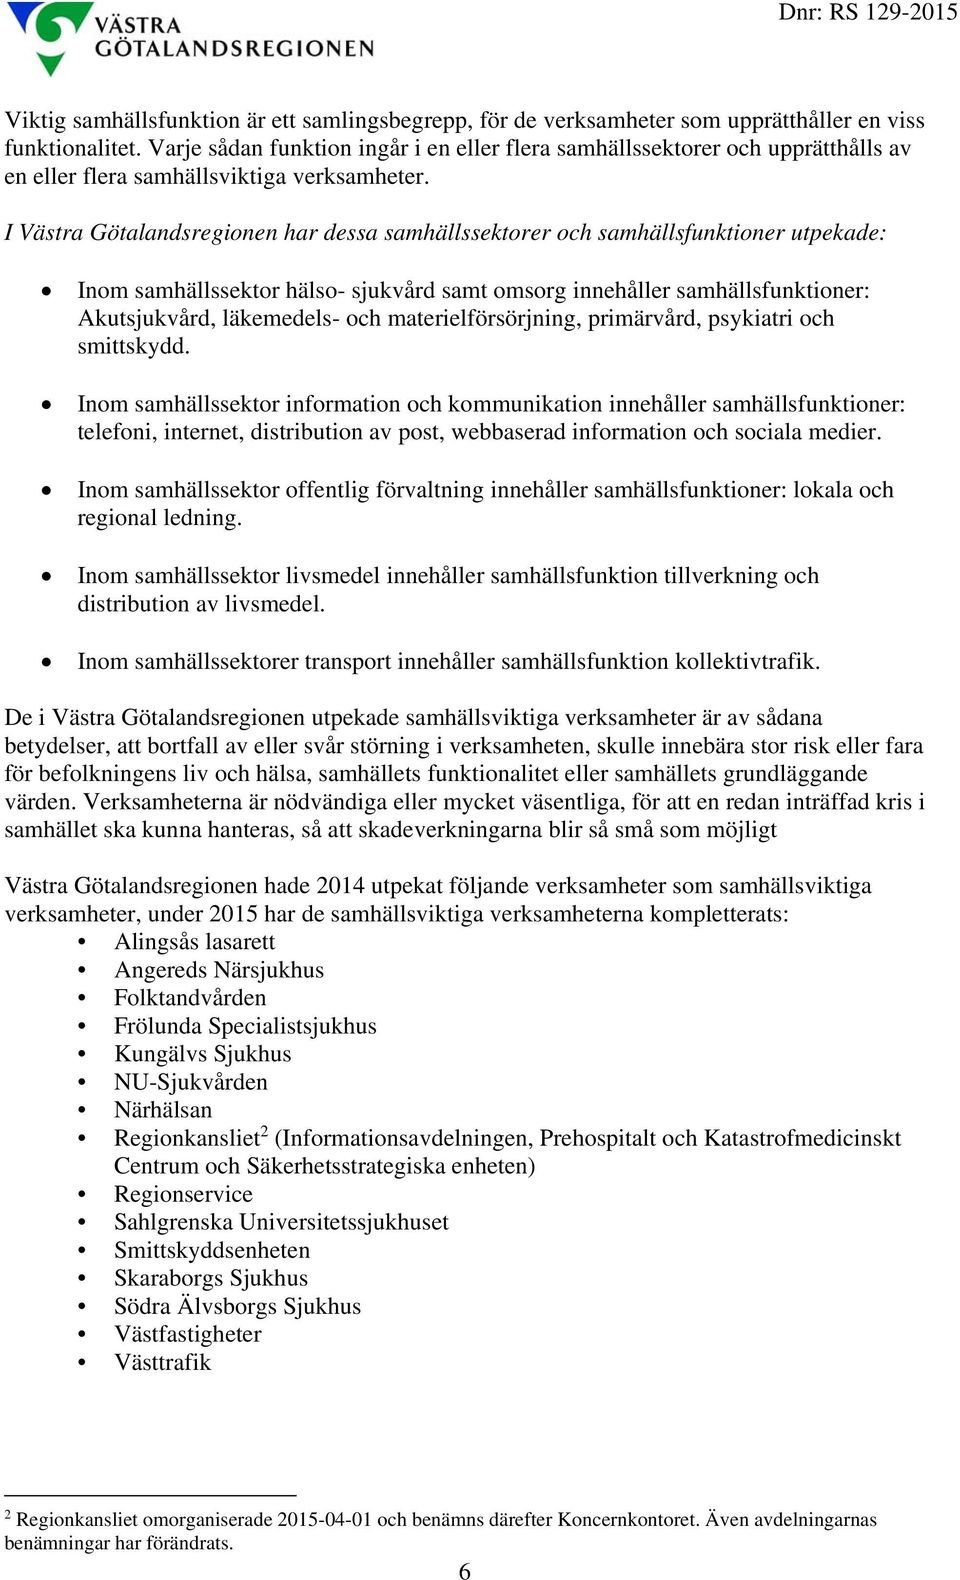 I Västra Götalandsregionen har dessa samhällssektorer och samhällsfunktioner utpekade: Inom samhällssektor hälso- sjukvård samt omsorg innehåller samhällsfunktioner: Akutsjukvård, läkemedels- och